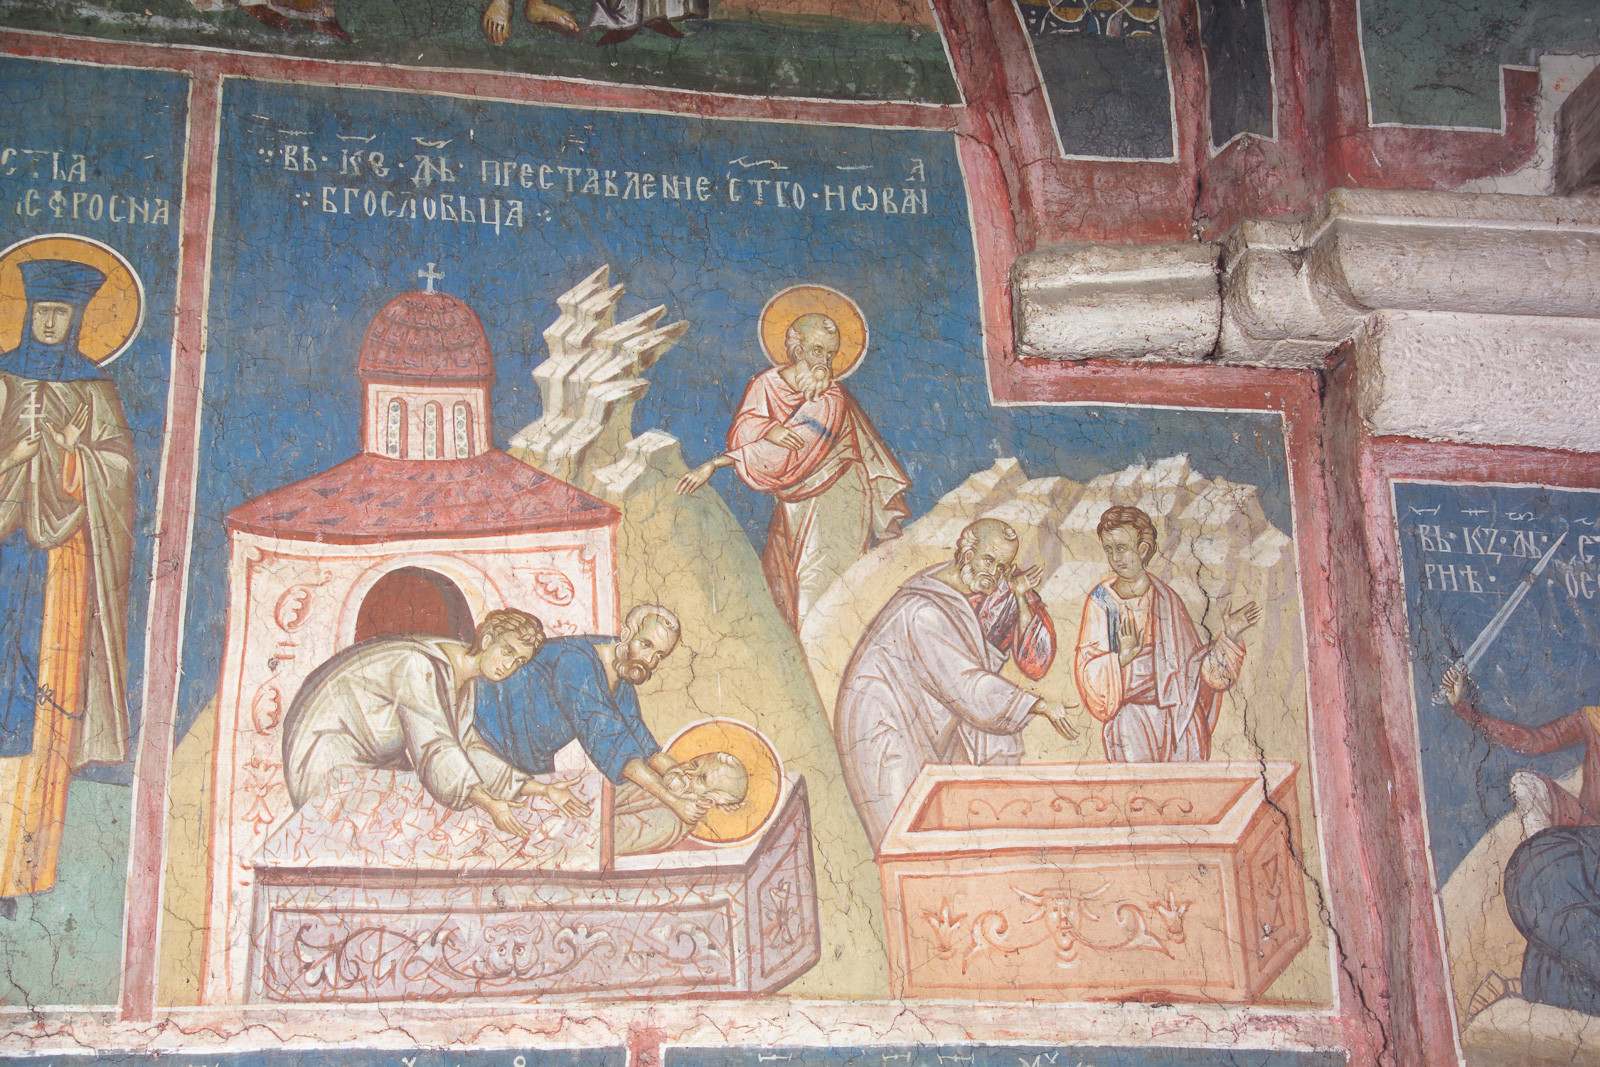 7II-3 September 26 - St. John the Theologos (scenes)